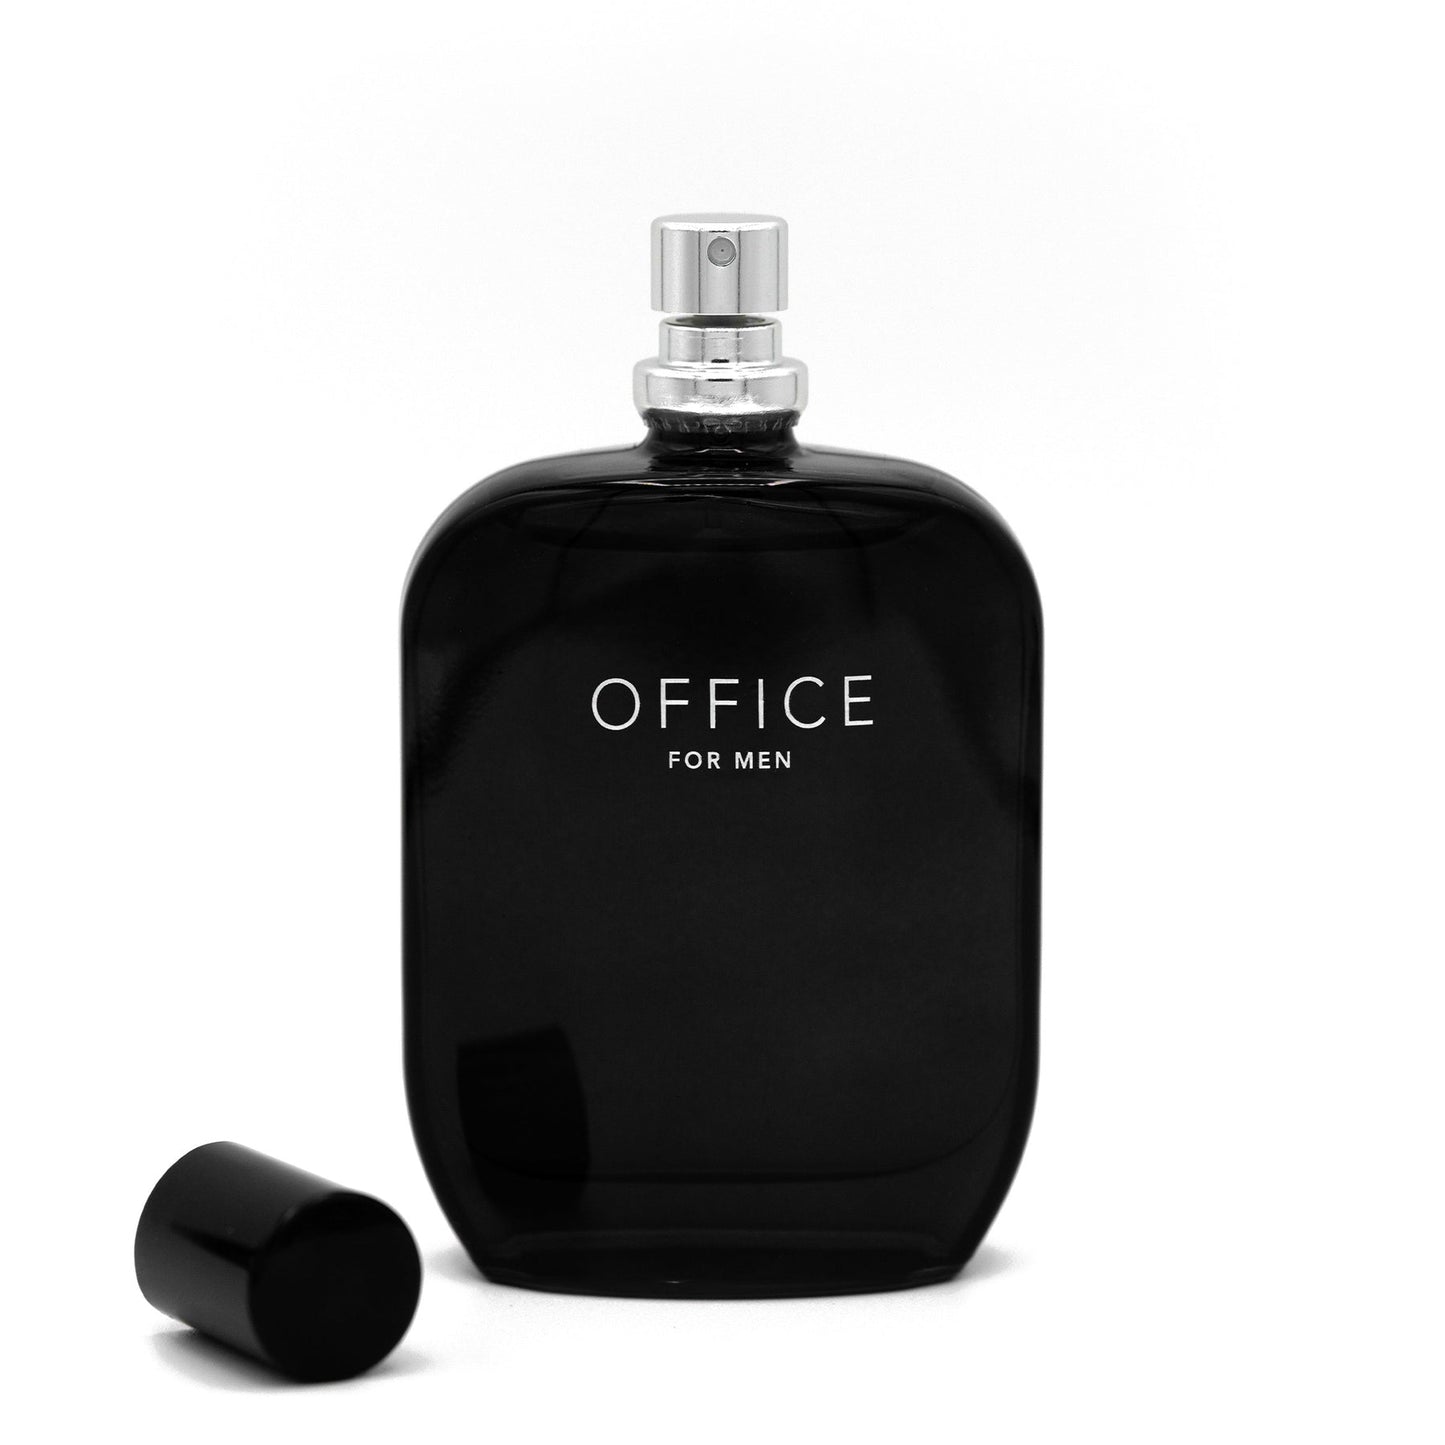 Office For Men Fragrance One for men